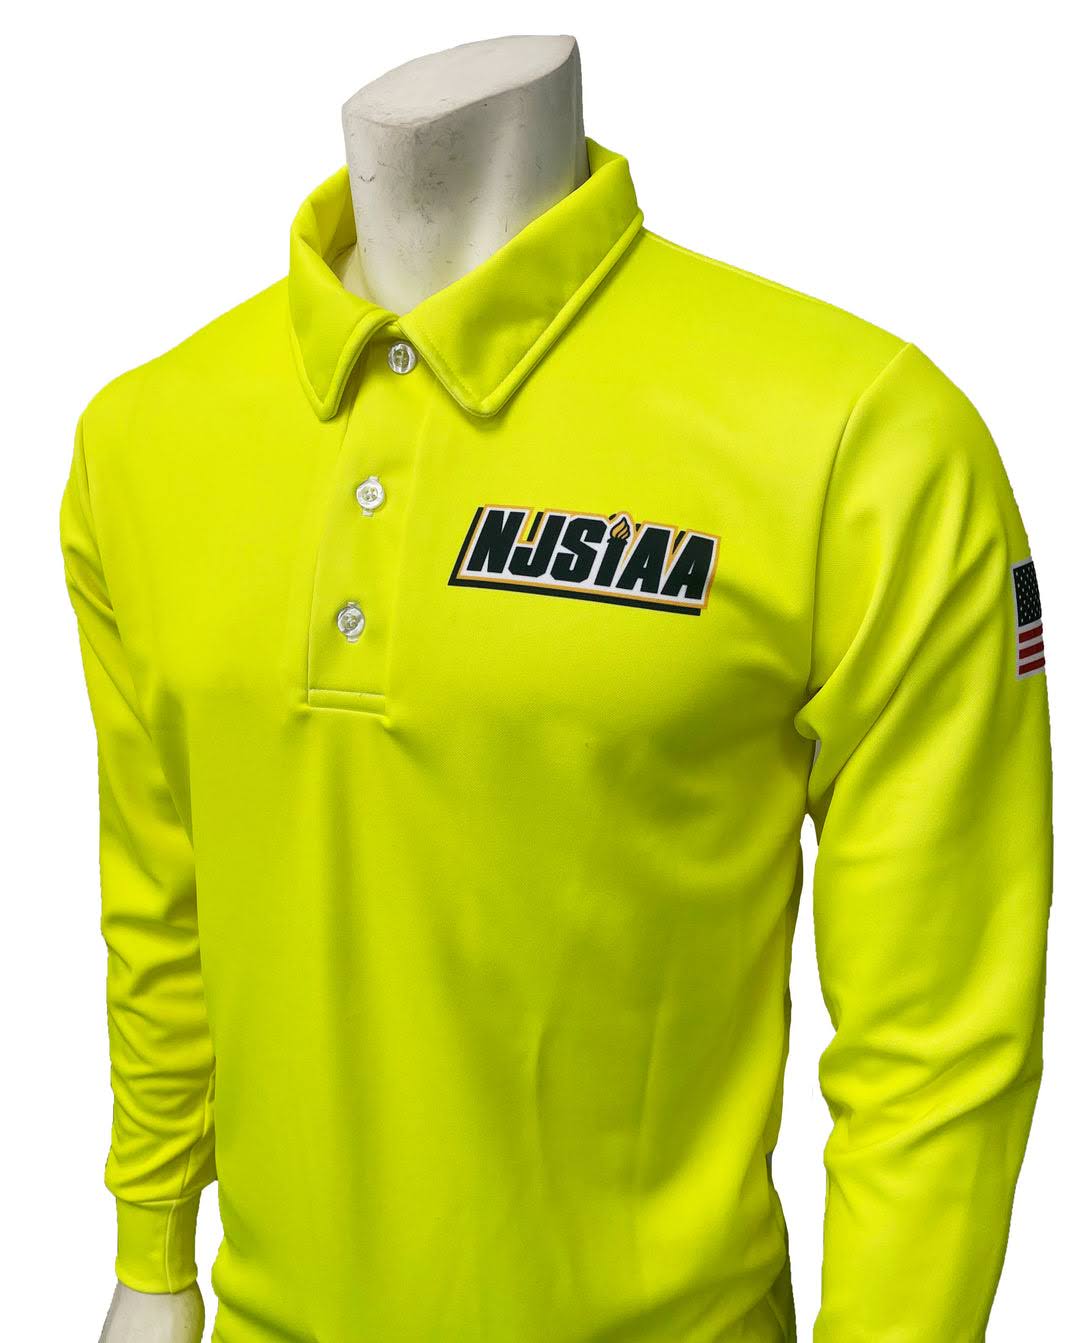 USA601NJ-FY - Smitty NJSIAA Men's Field Hockey Long Sleeve Shirt